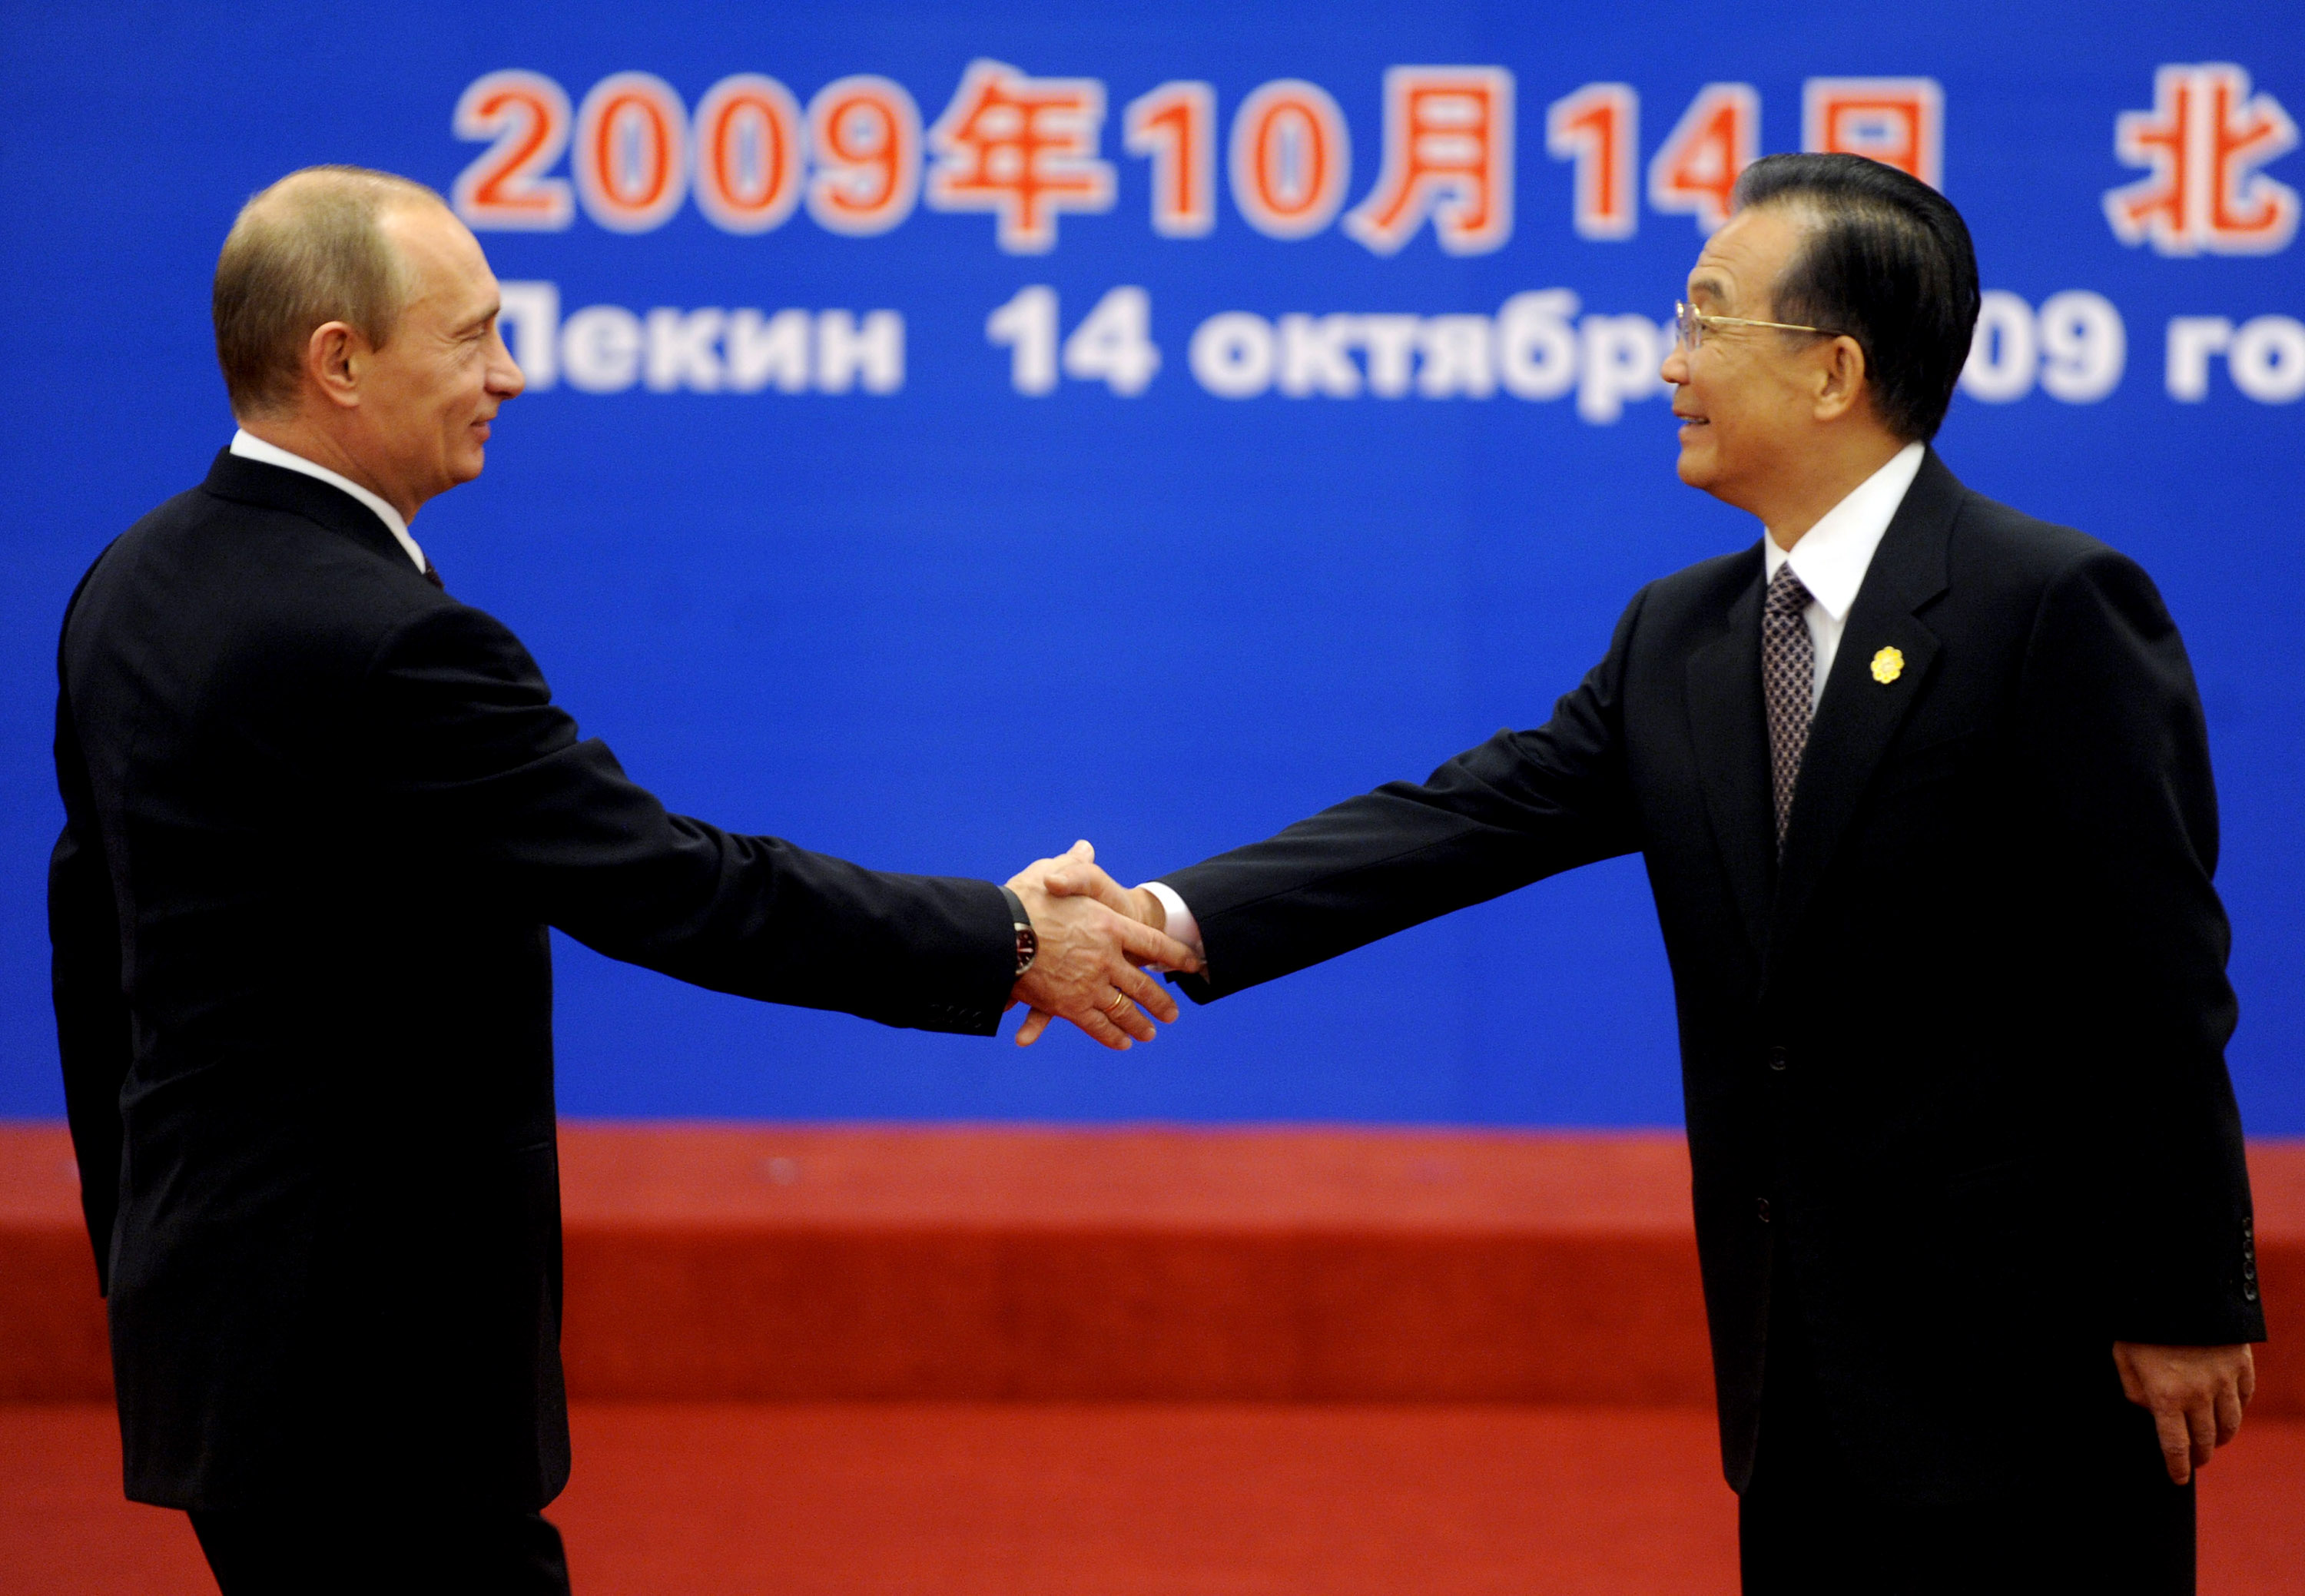 应温家宝总理邀请，俄总理普京于2009年10月12日至14日对中国进行正式访问。两国总理握手友好，但民间的反应则大不相同。